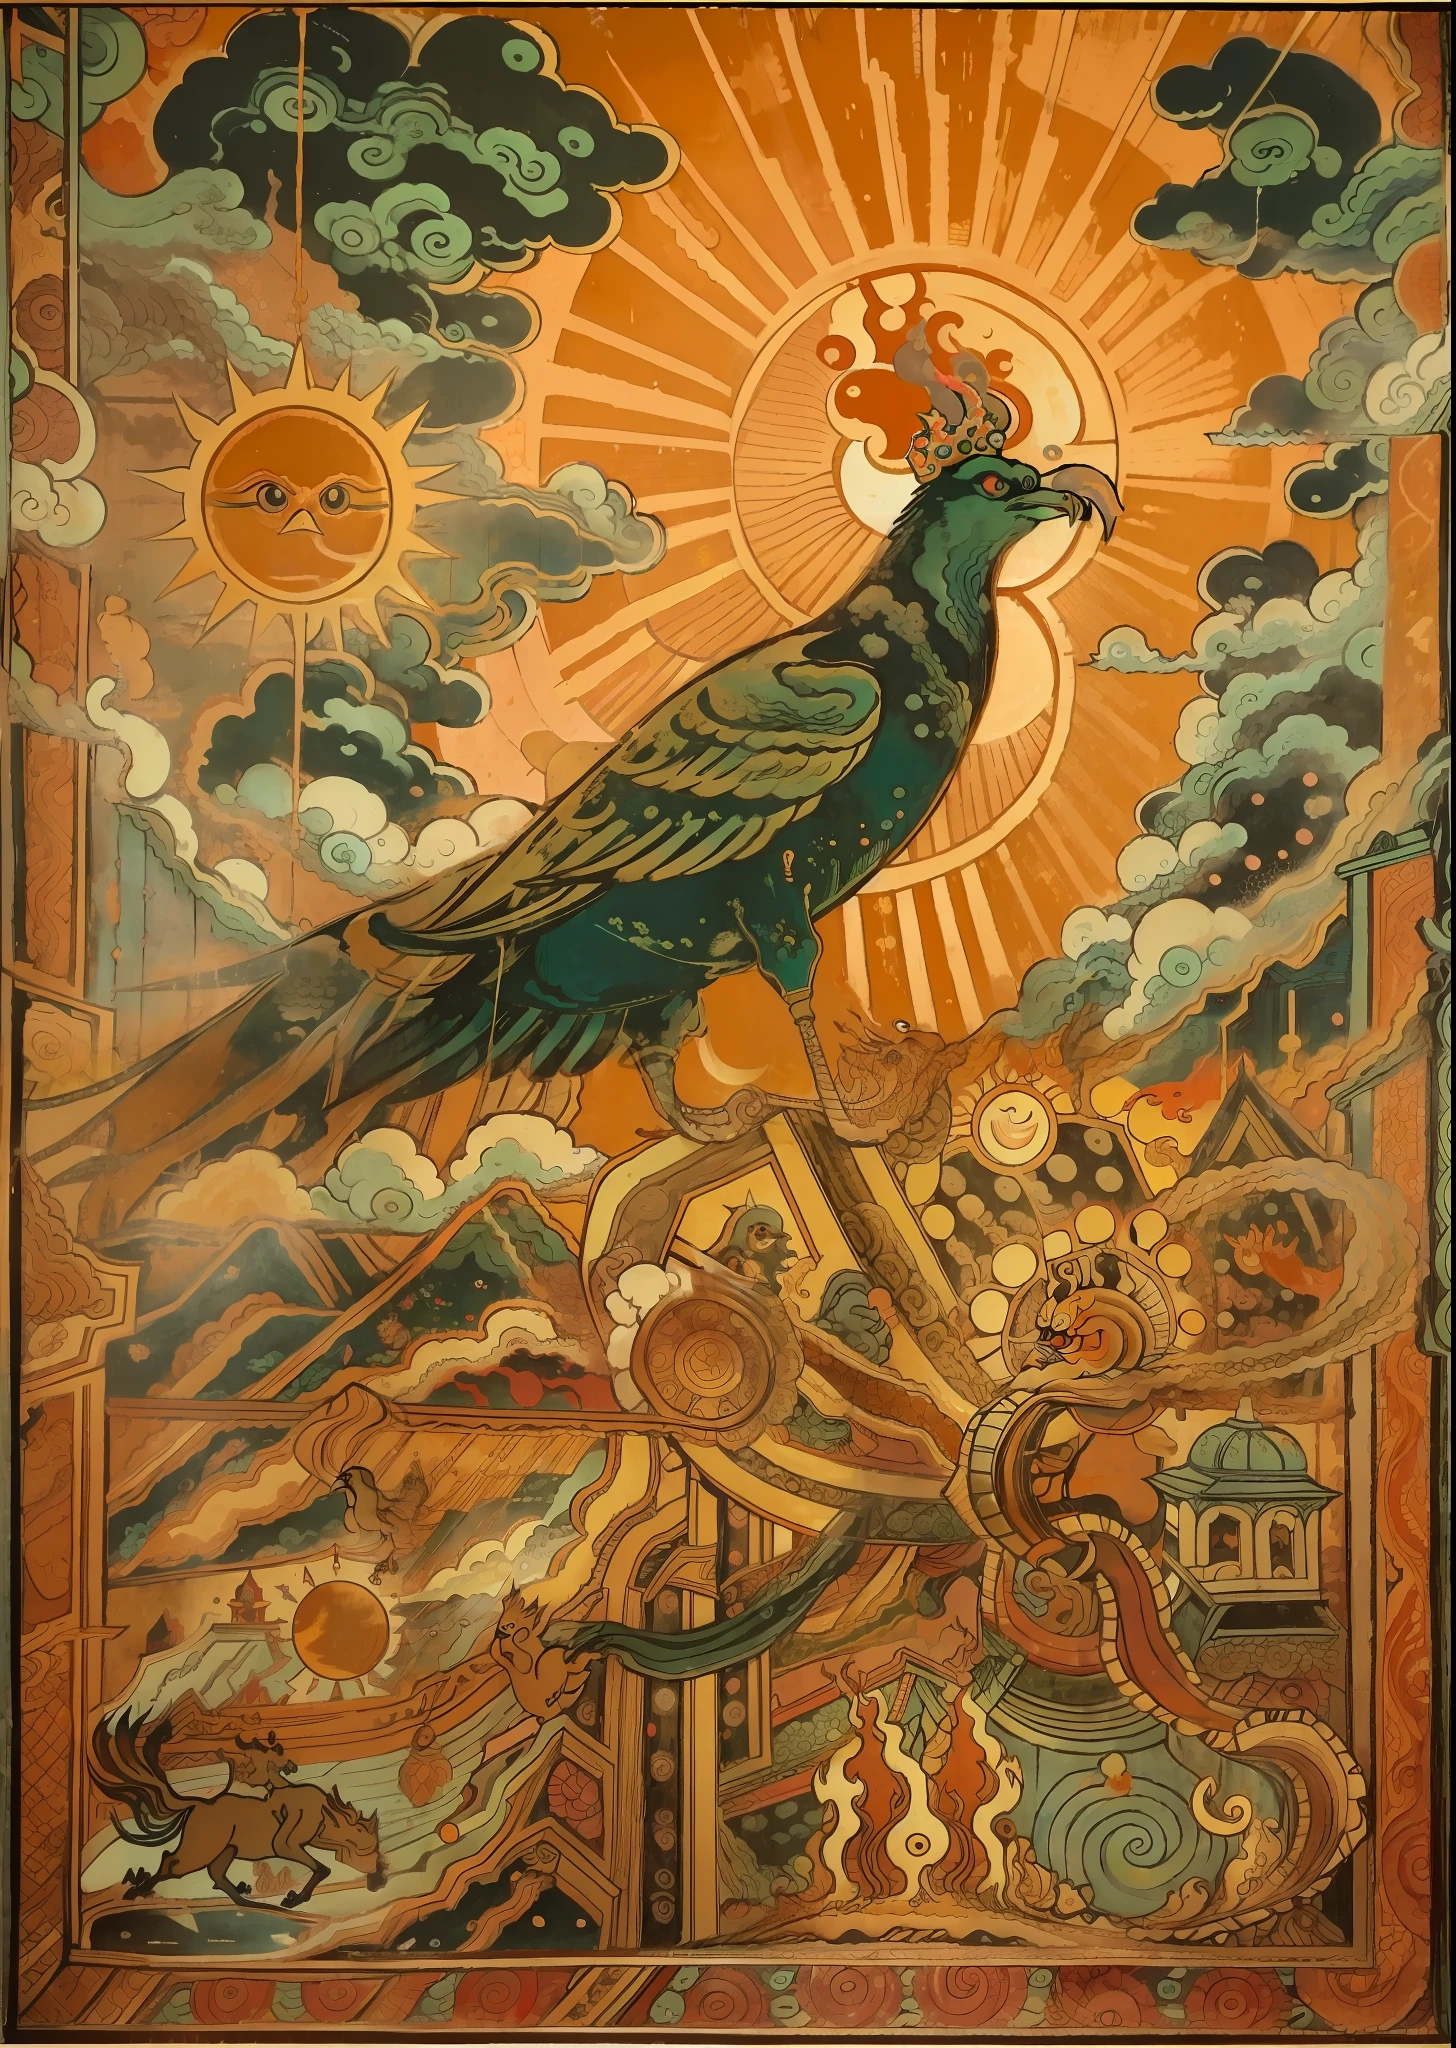 太陽神鳥を描いたもの（三本足の金色のカラス）壁画の数, 眩しい日差しを背景に，3本の足を見せる巨大な神鳥，空へ舞い上がる，体は炎に囲まれています，背景には太陽に照らされた縁起の良い雲が見えます， 風化した壁にフレスコ画が展示されている,過去の変遷